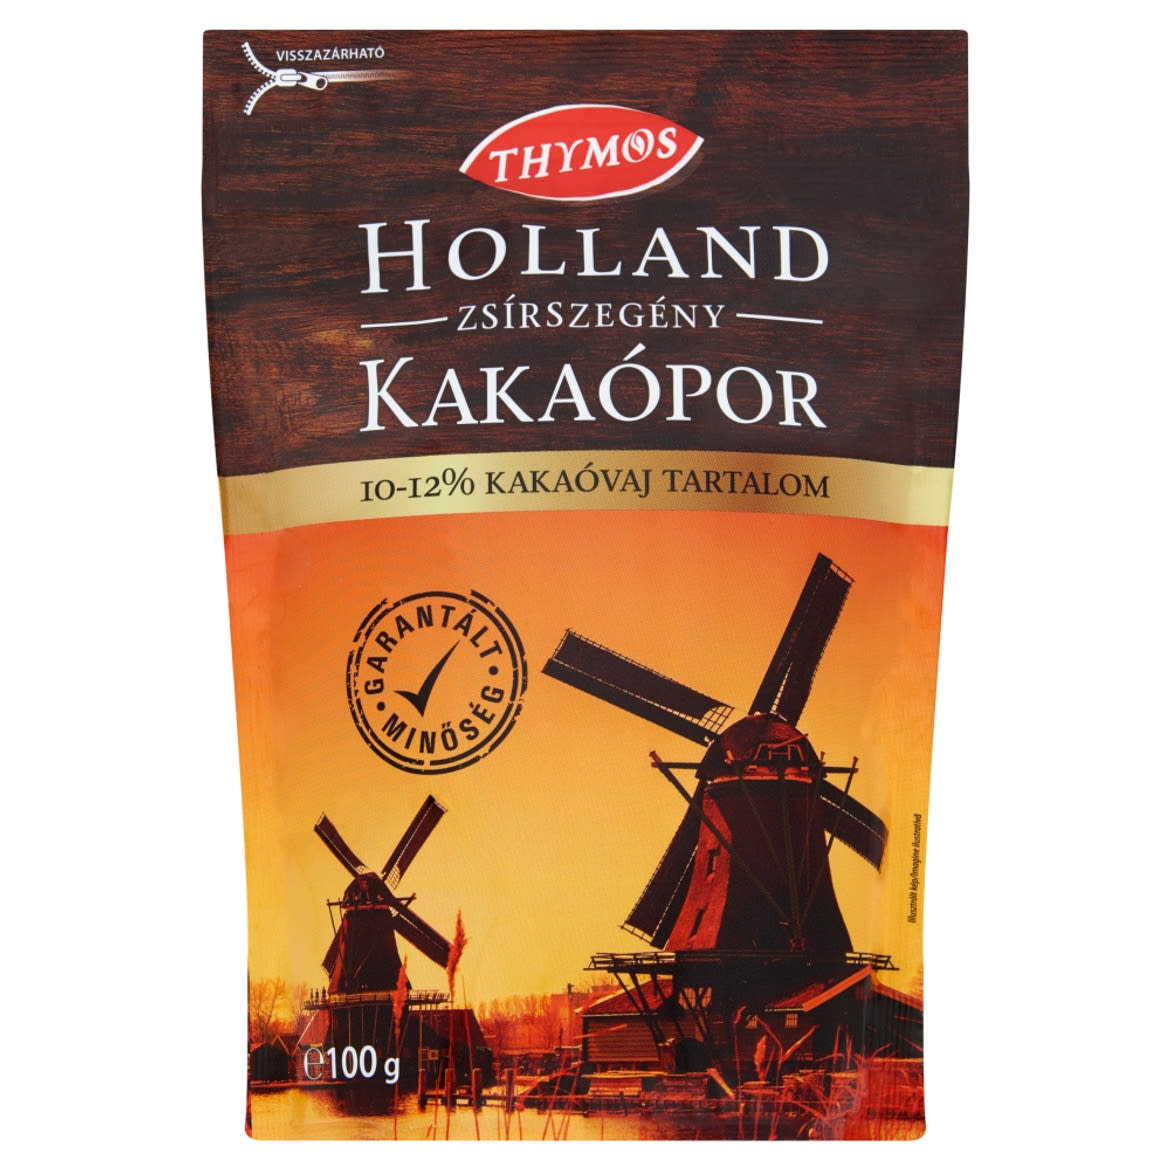 Thymos holland zsírszegény kakaópor